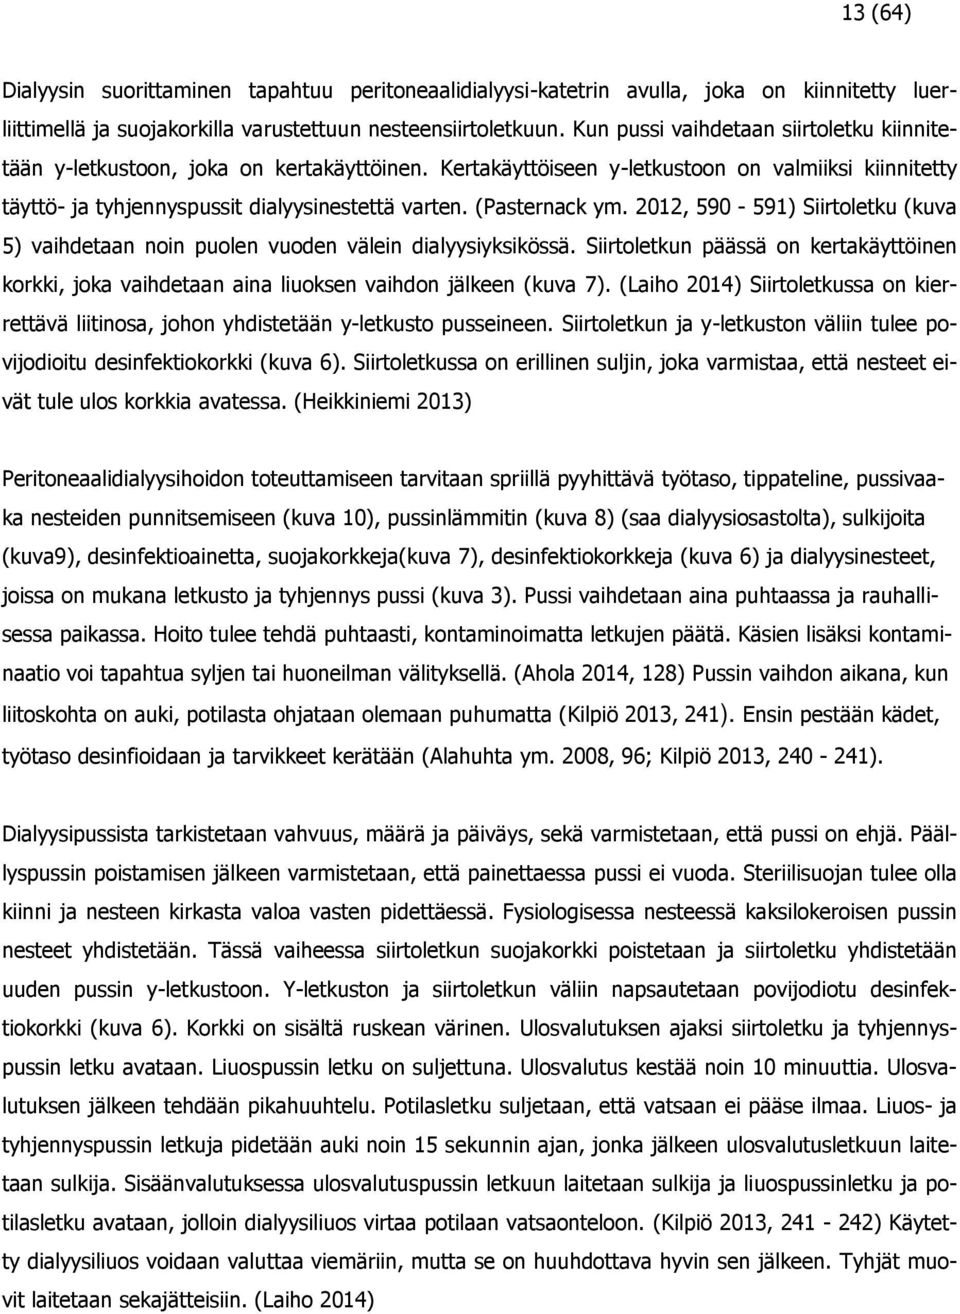 (Pasternack ym. 2012, 590-591) Siirtoletku (kuva 5) vaihdetaan noin puolen vuoden välein dialyysiyksikössä.